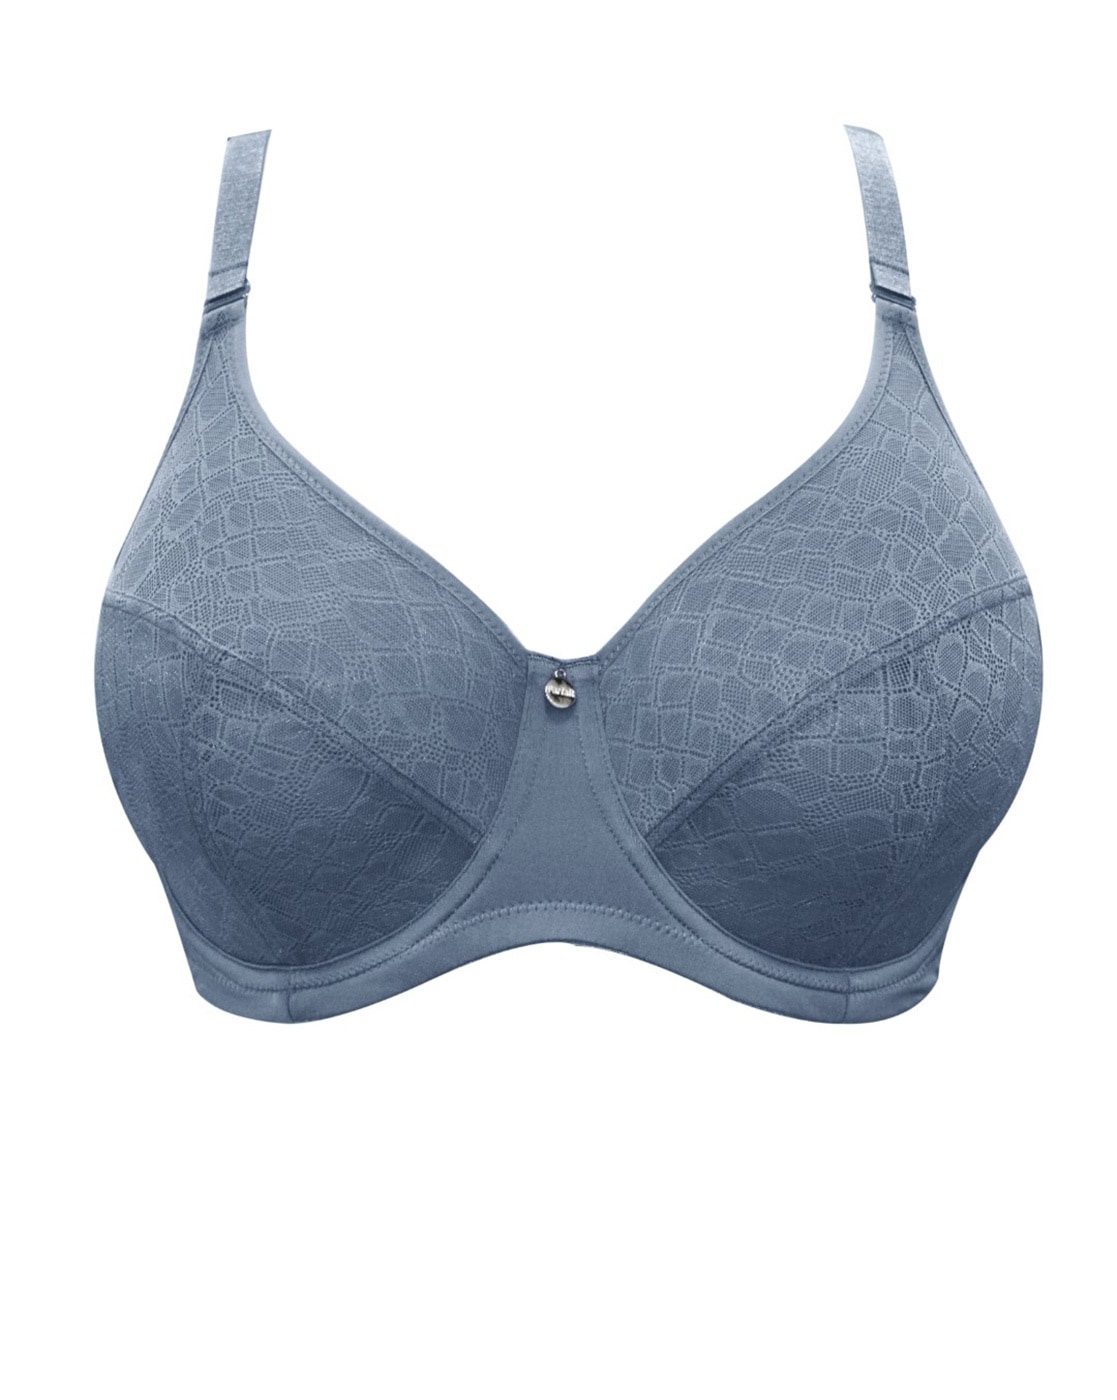 Buy Blue Bras for Women by PARFAIT Online